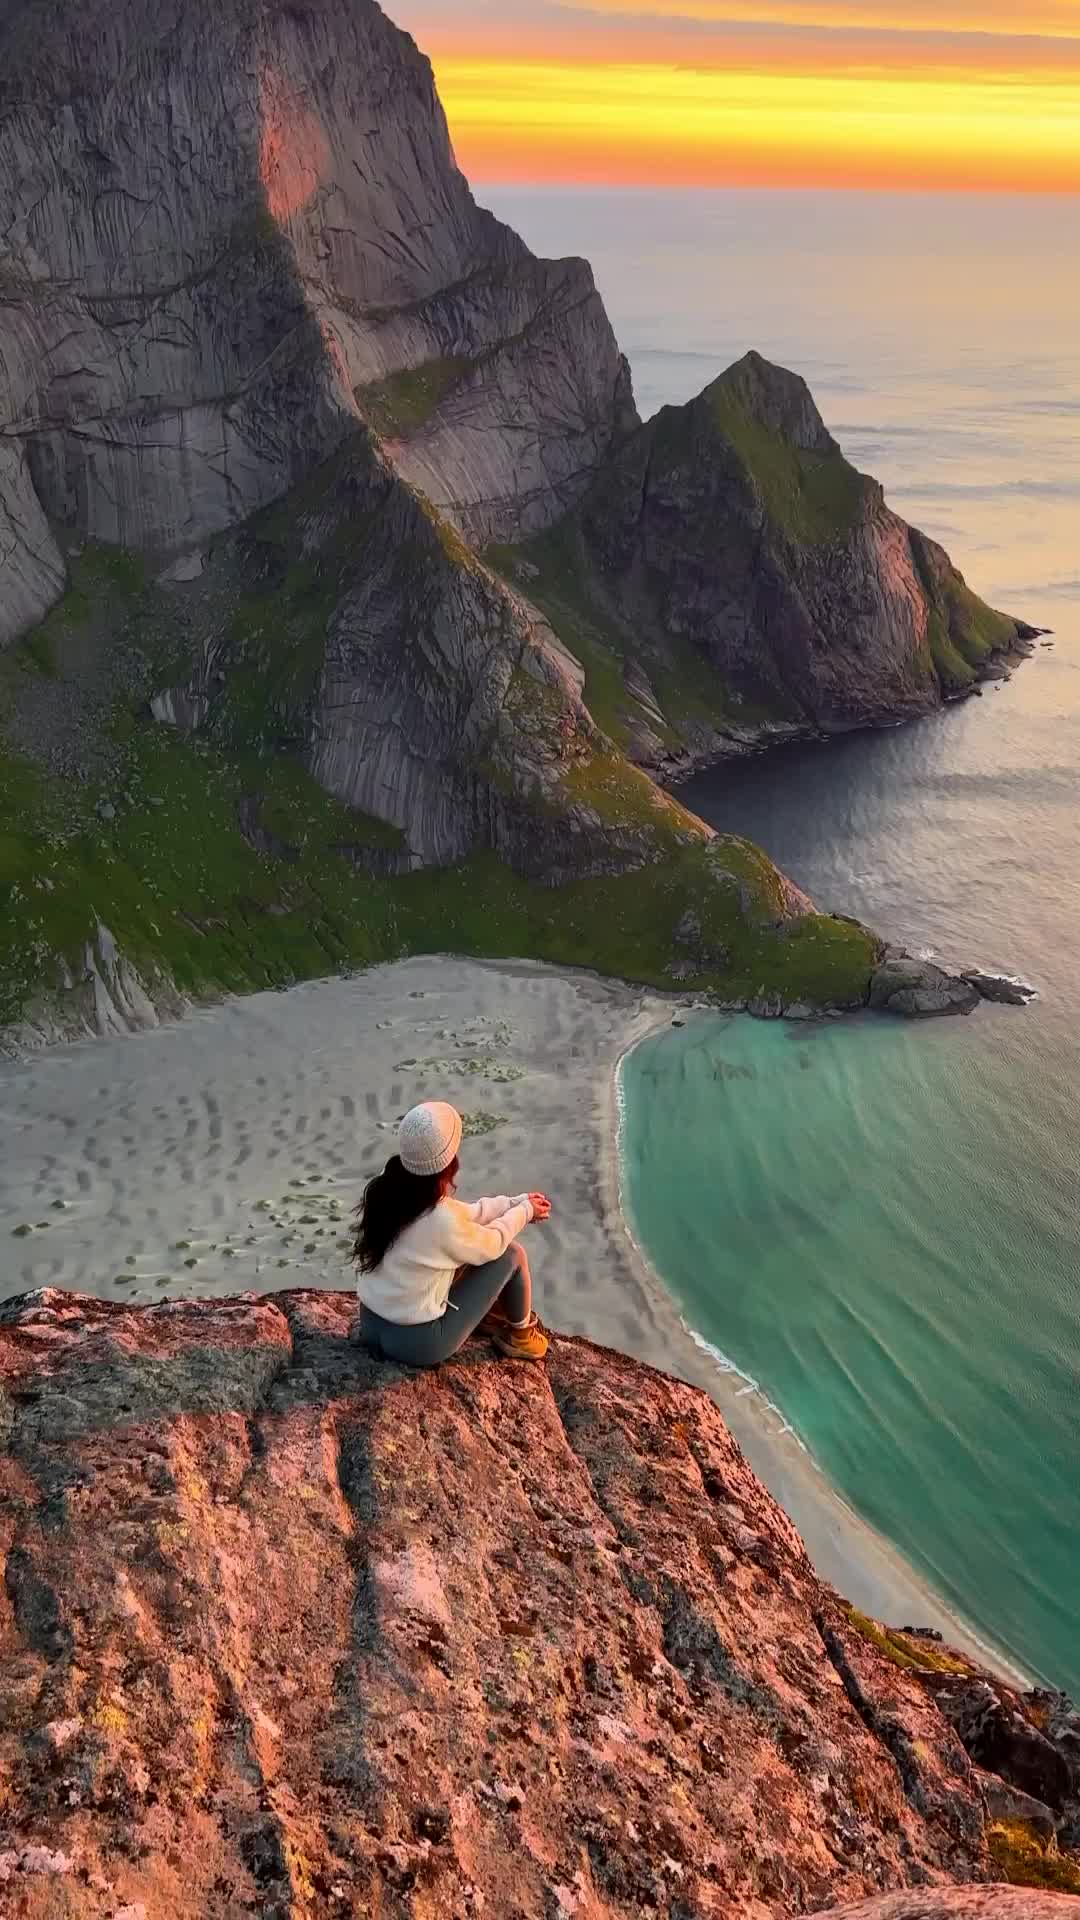 Adventure Awaits in Lofoten Islands, Norway